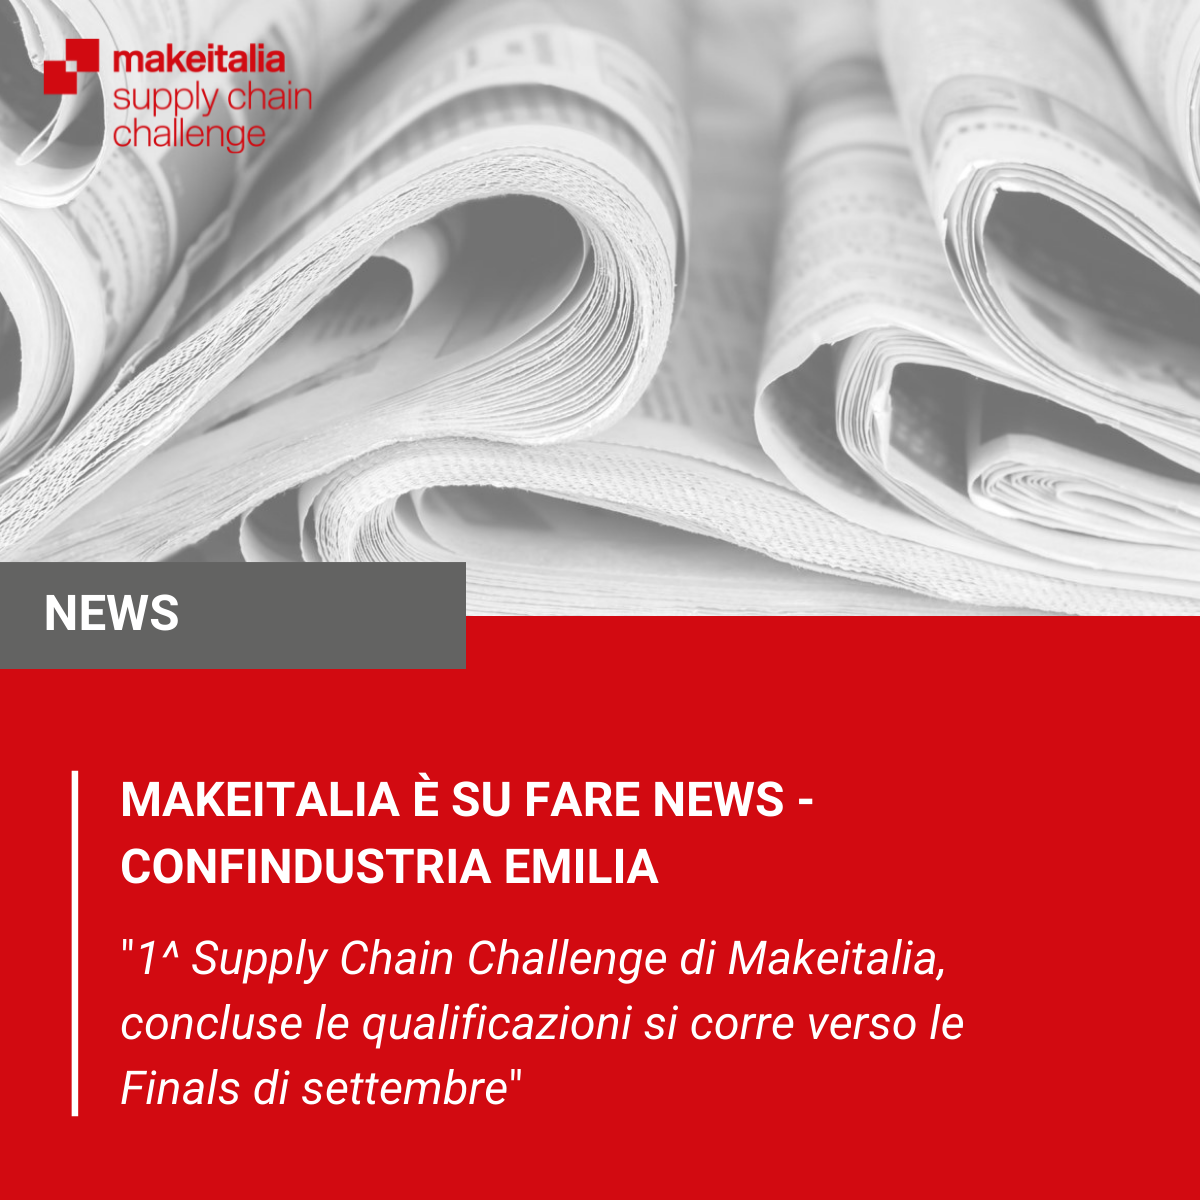 1^ Supply Chain Challenge di Makeitalia, concluse le qualificazioni si corre verso le Finals di settembre